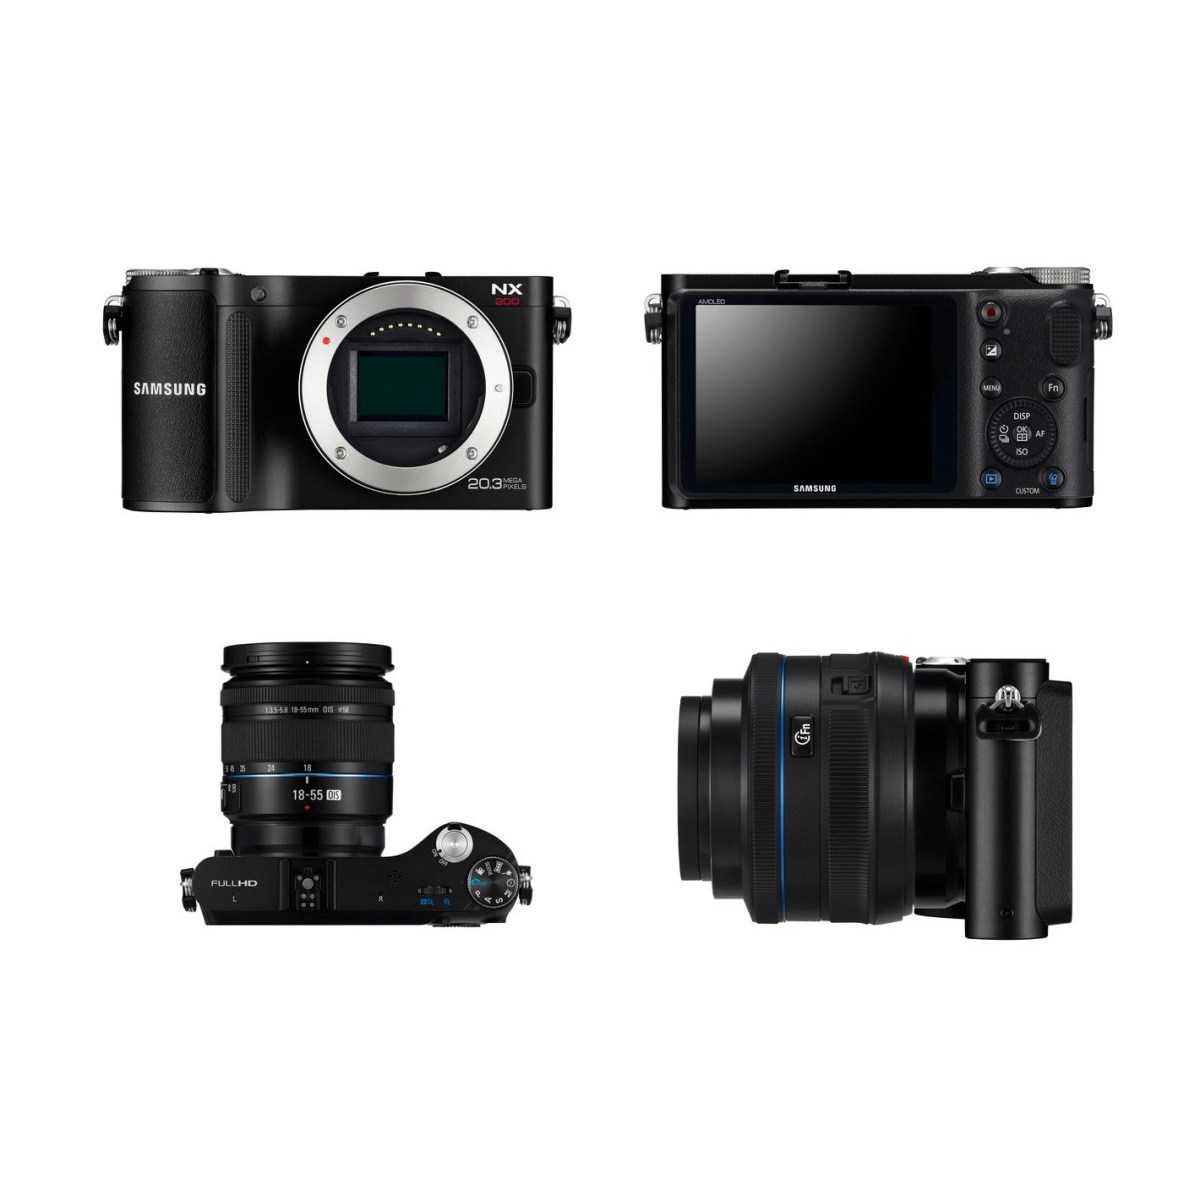 Цифровой фотоаппарат Samsung NX200 - подробные характеристики обзоры видео фото Цены в интернет-магазинах где можно купить цифровую фотоаппарат Samsung NX200